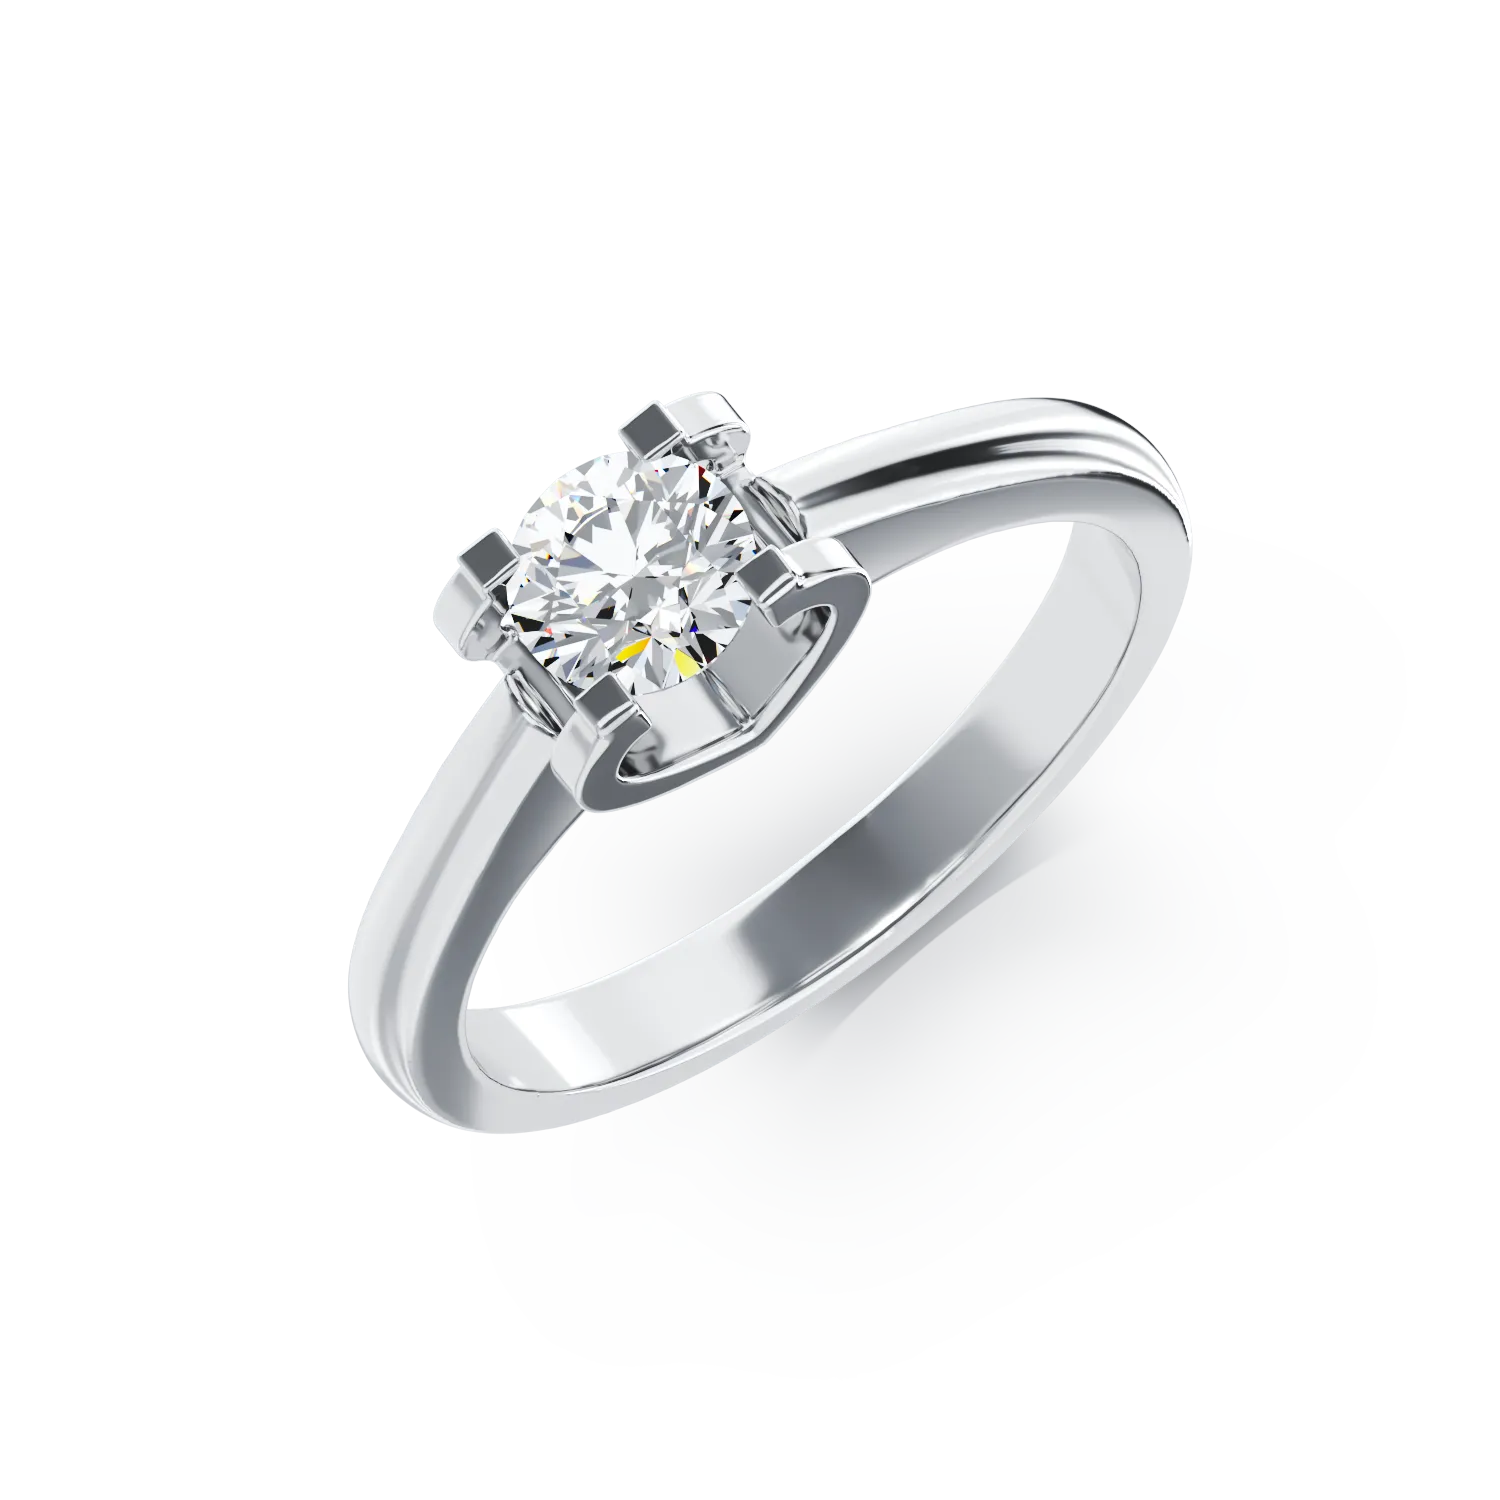 18K fehérarany eljegyzési gyűrű 0.2ct szoliter gyémánttal